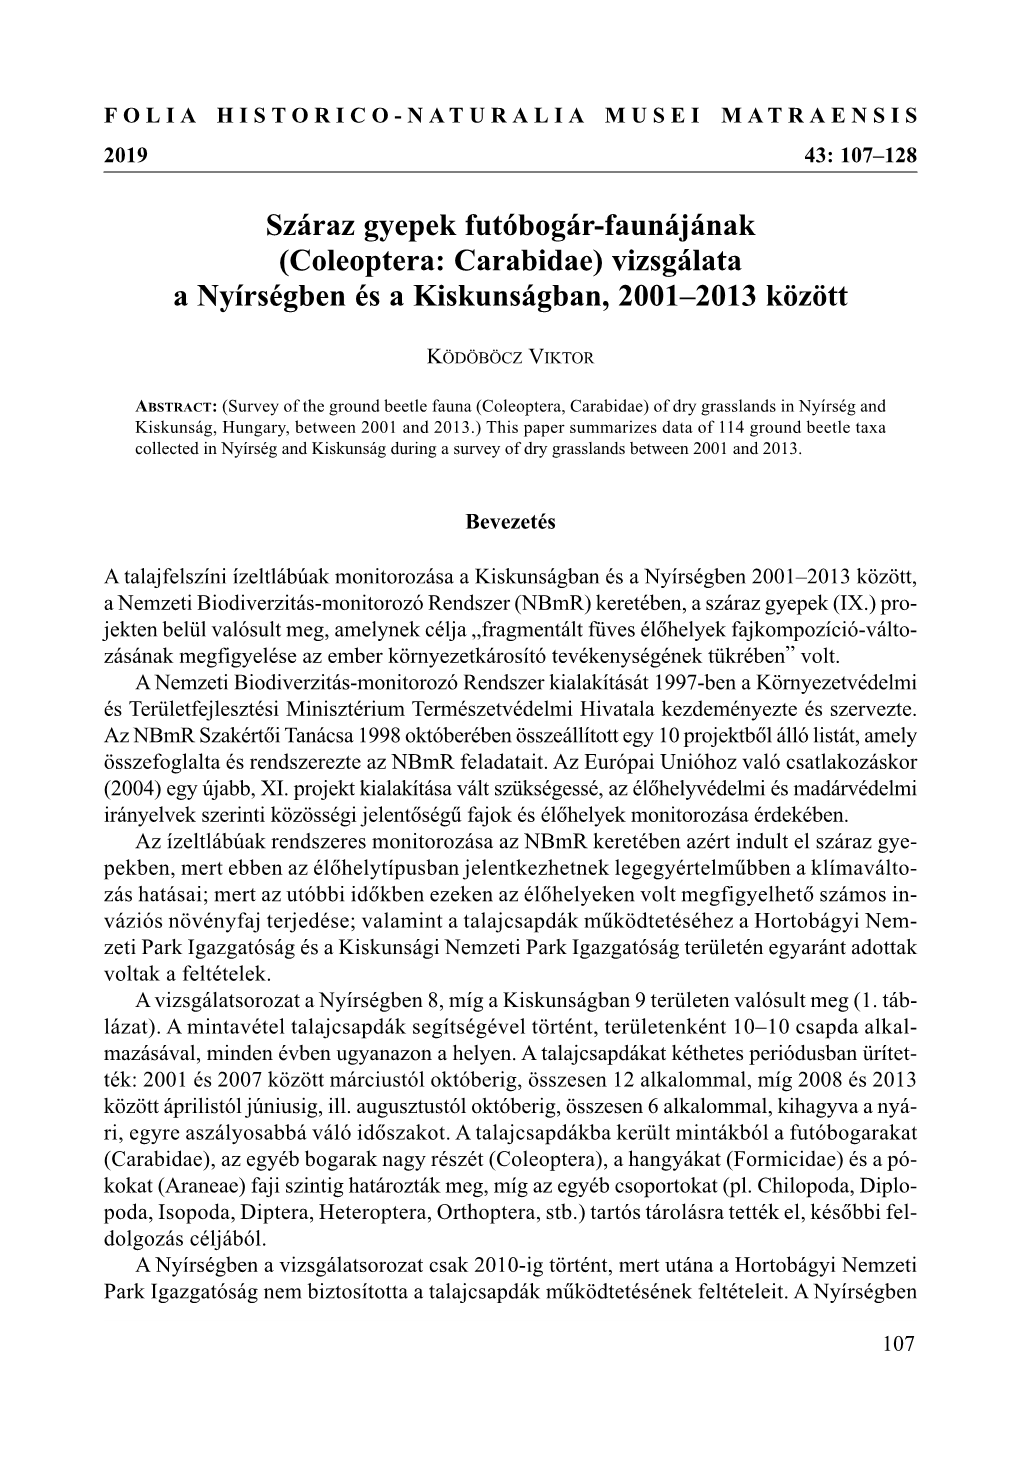 Száraz Gyepek Futóbogár-Faunájának (Coleoptera: Carabidae) Vizsgálata a Nyírségben És a Kiskunságban, 2001–2013 Között